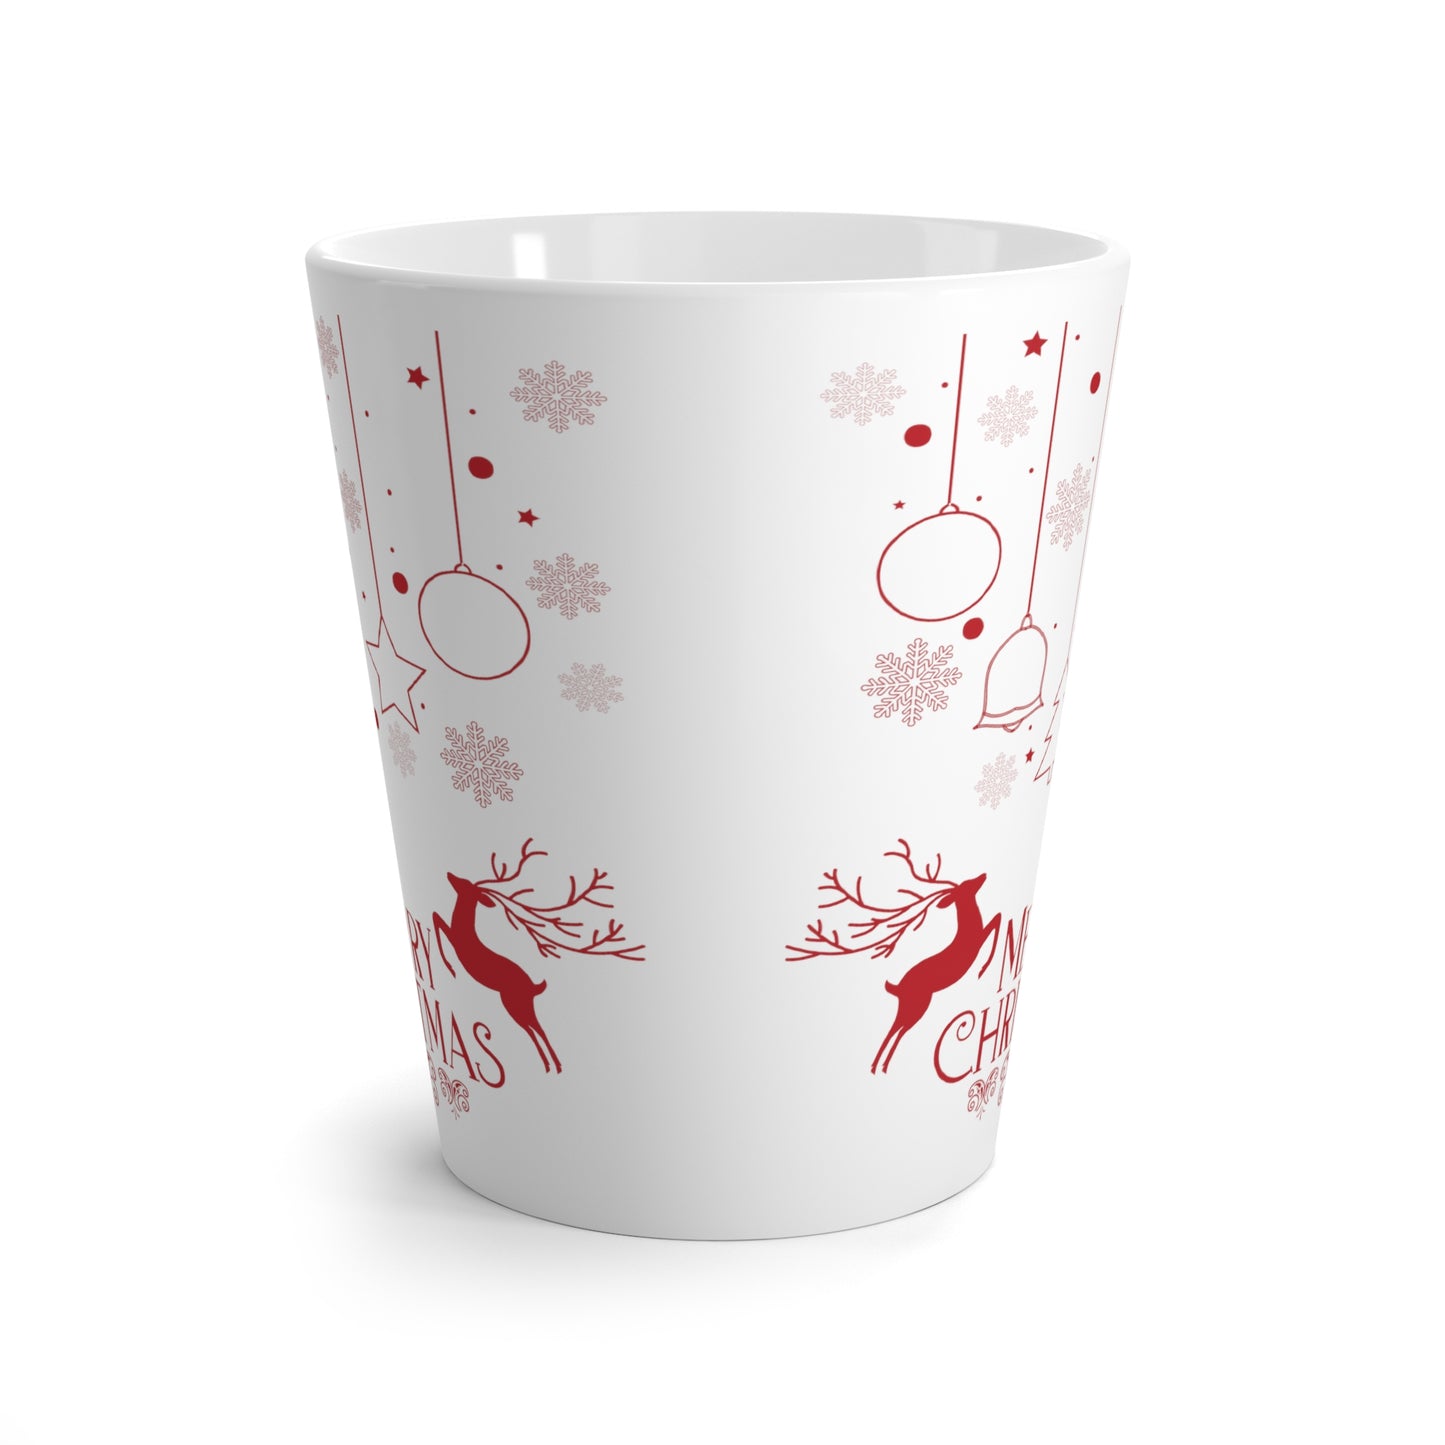 Merry Christmas Printed Lattee Mug, 12oz, Red